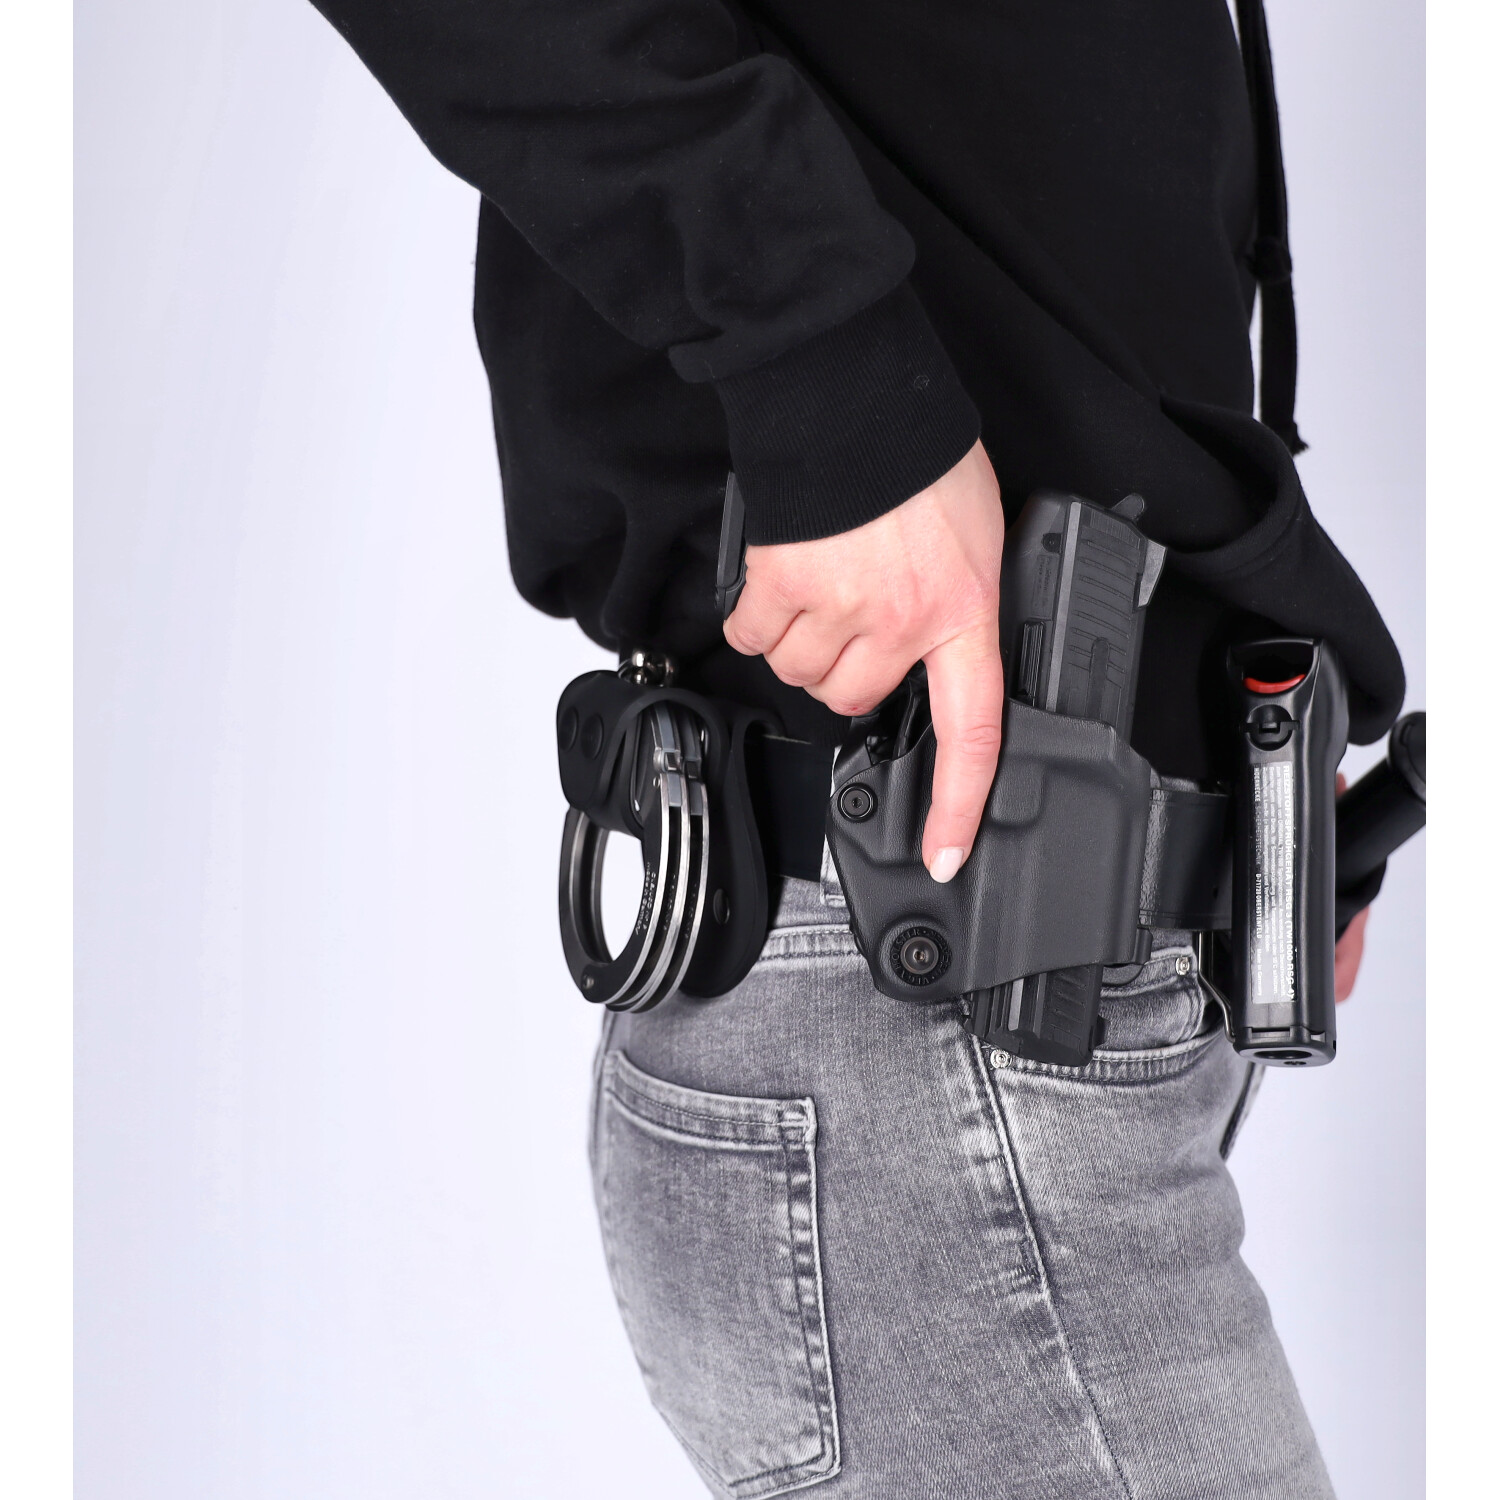 Vega Pistolenkoffer (2BL11N) - Polas24 Polizeiausrüstung